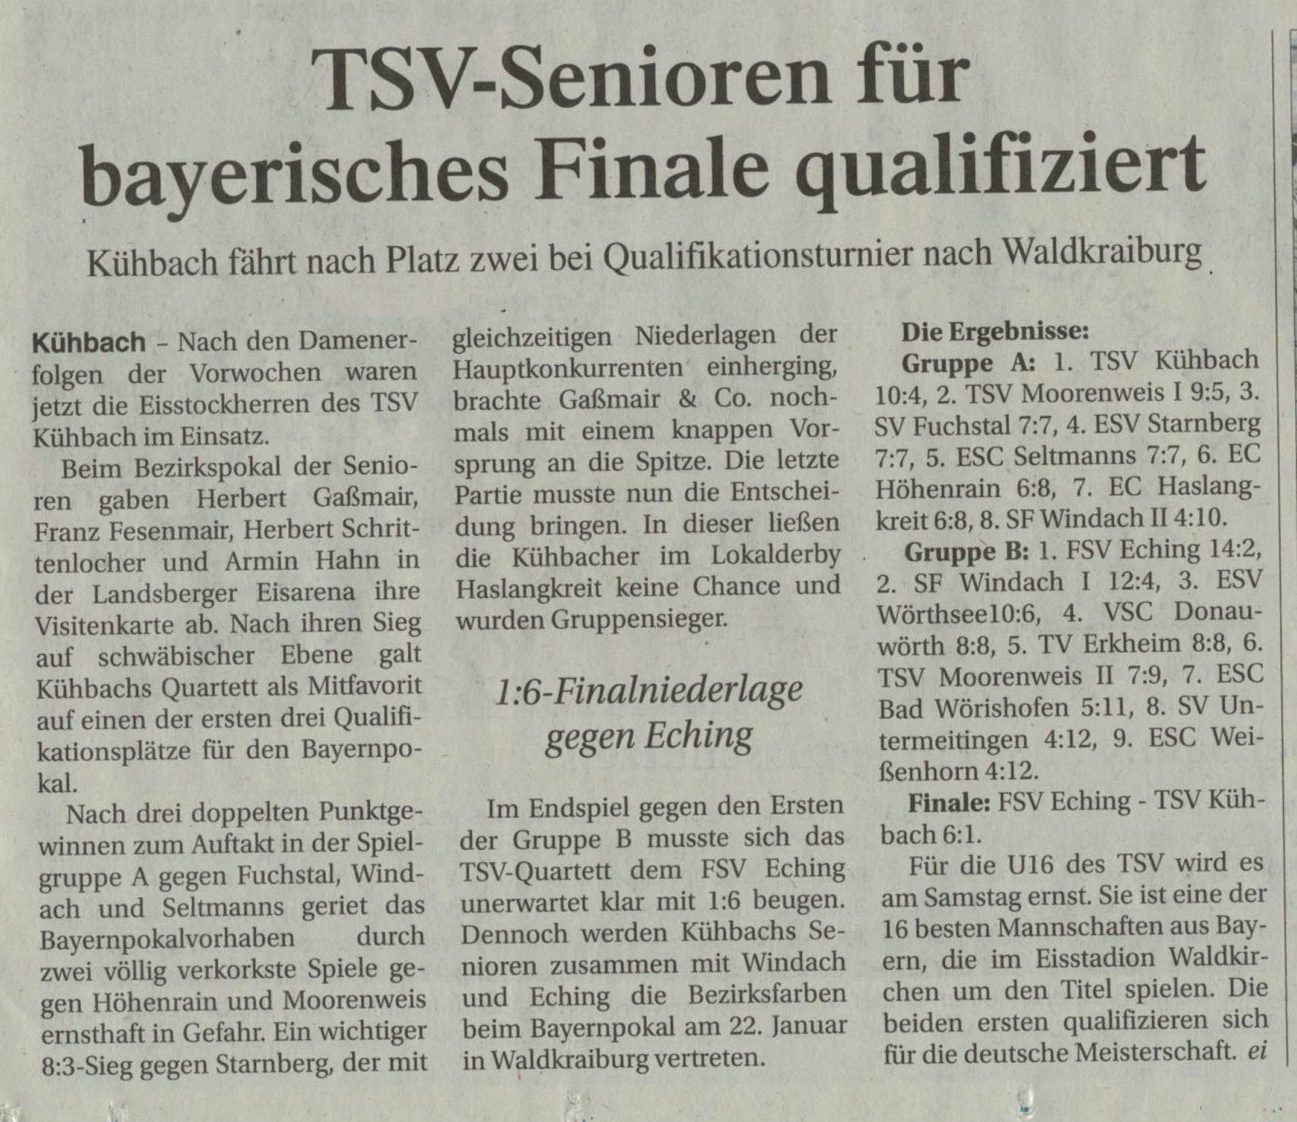 TSV-Senioren für bayerisches Finale qualifiziert